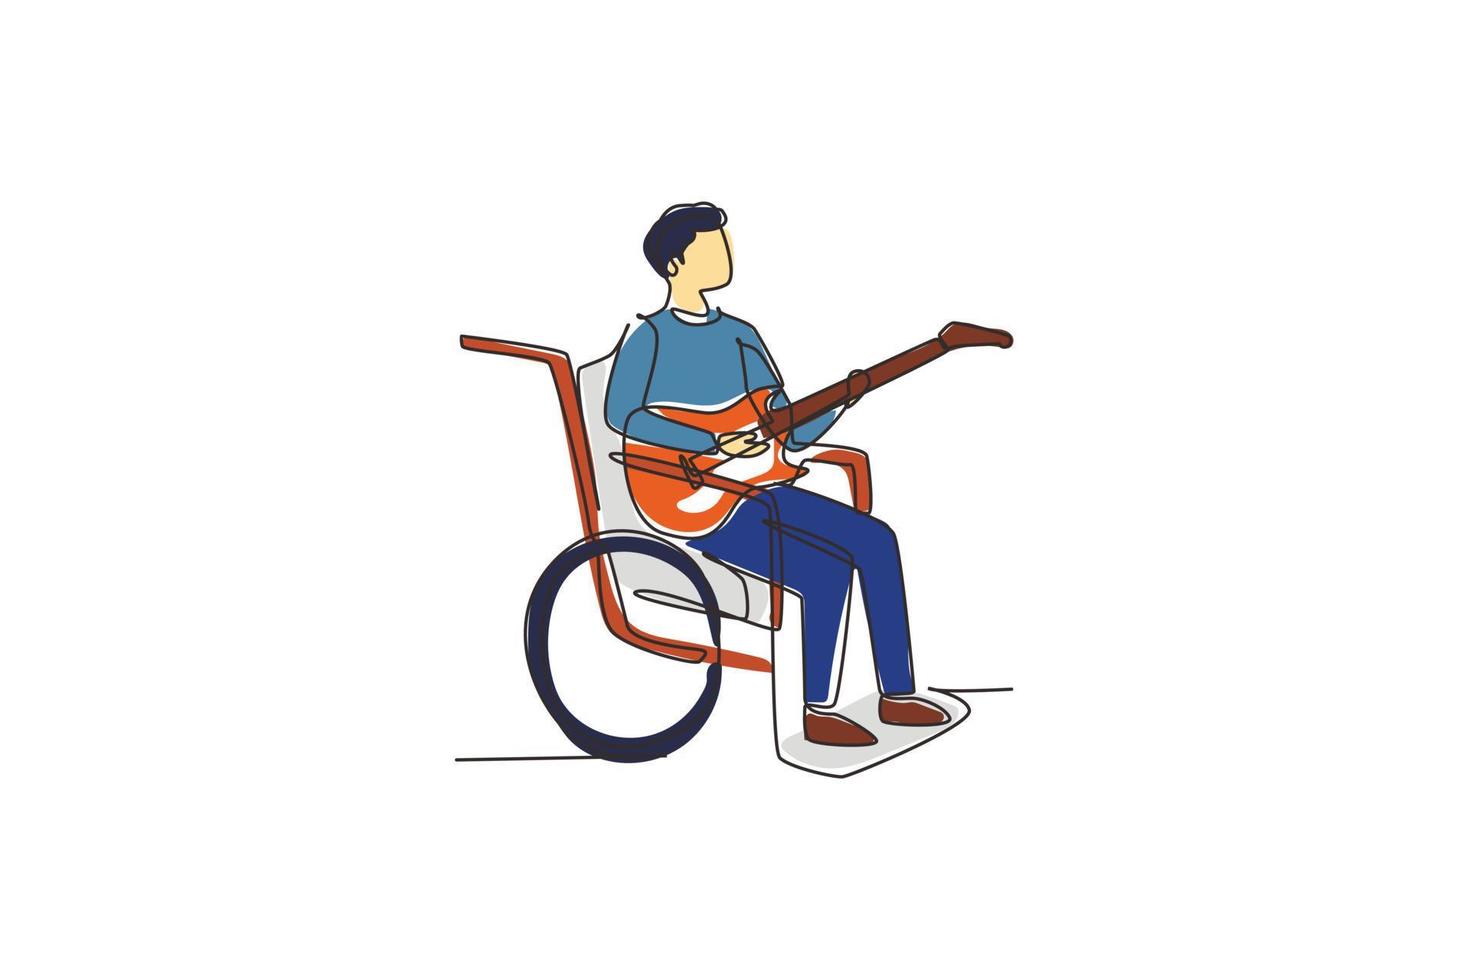 disegno continuo di una linea maschio seduto su sedia a rotelle che suona la chitarra elettrica, canta una canzone. disabile fisico. persona del chitarrista nel reparto della stanza d'ospedale. illustrazione grafica vettoriale di disegno a linea singola